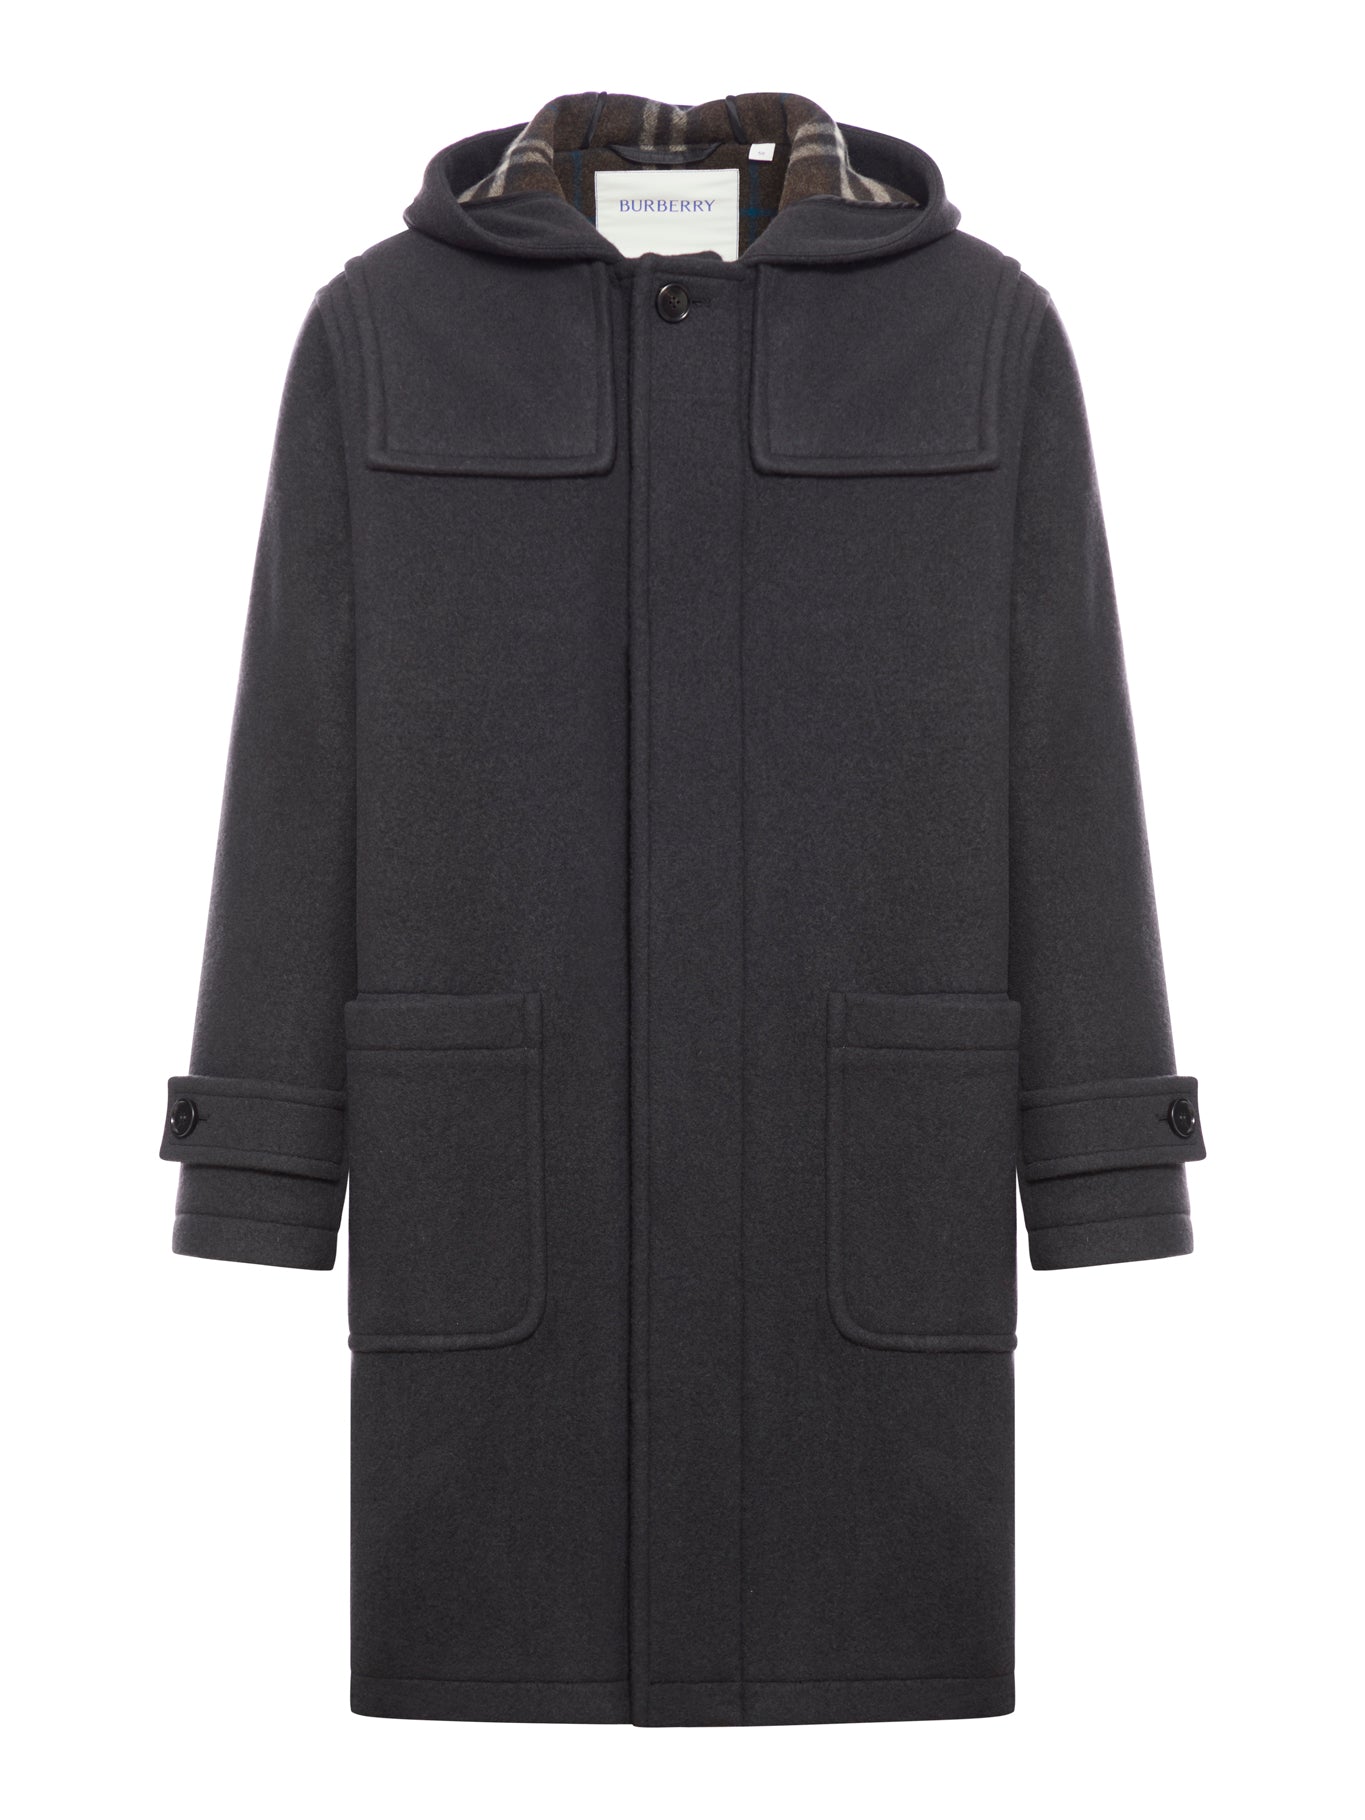 Burberry cloth coat